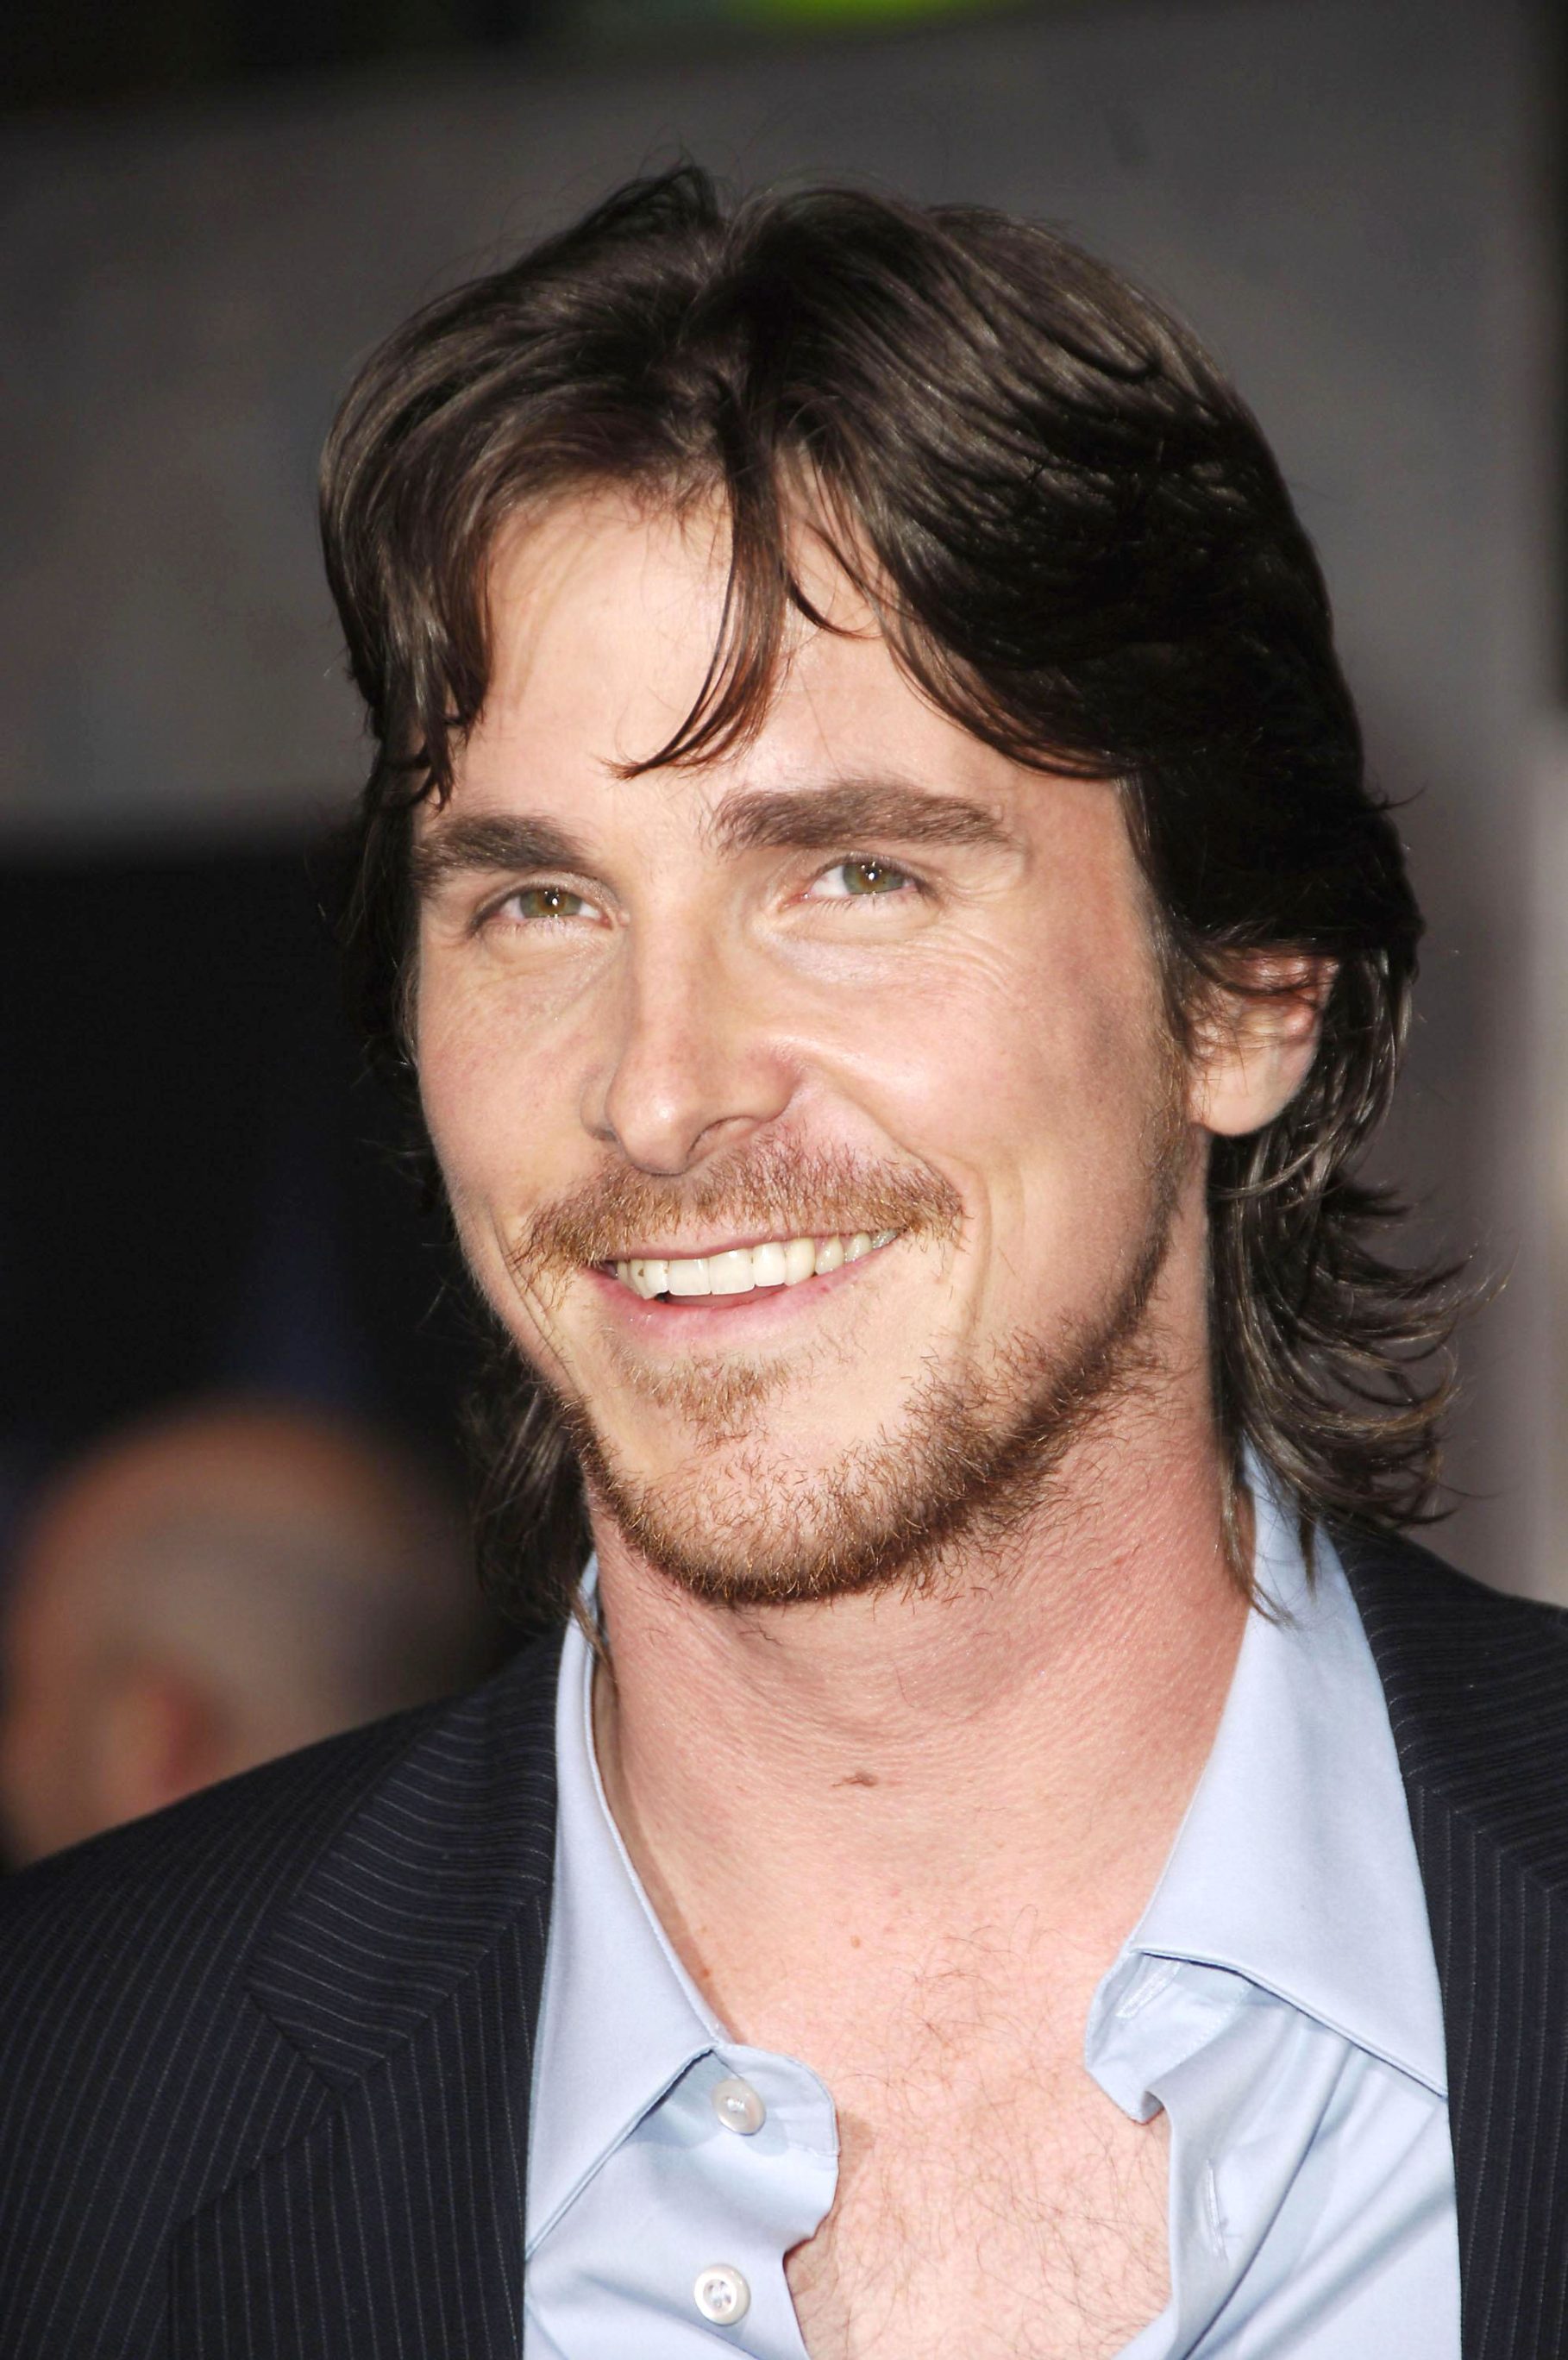 Christian Bale - Hollywood's "Chameleon" Man